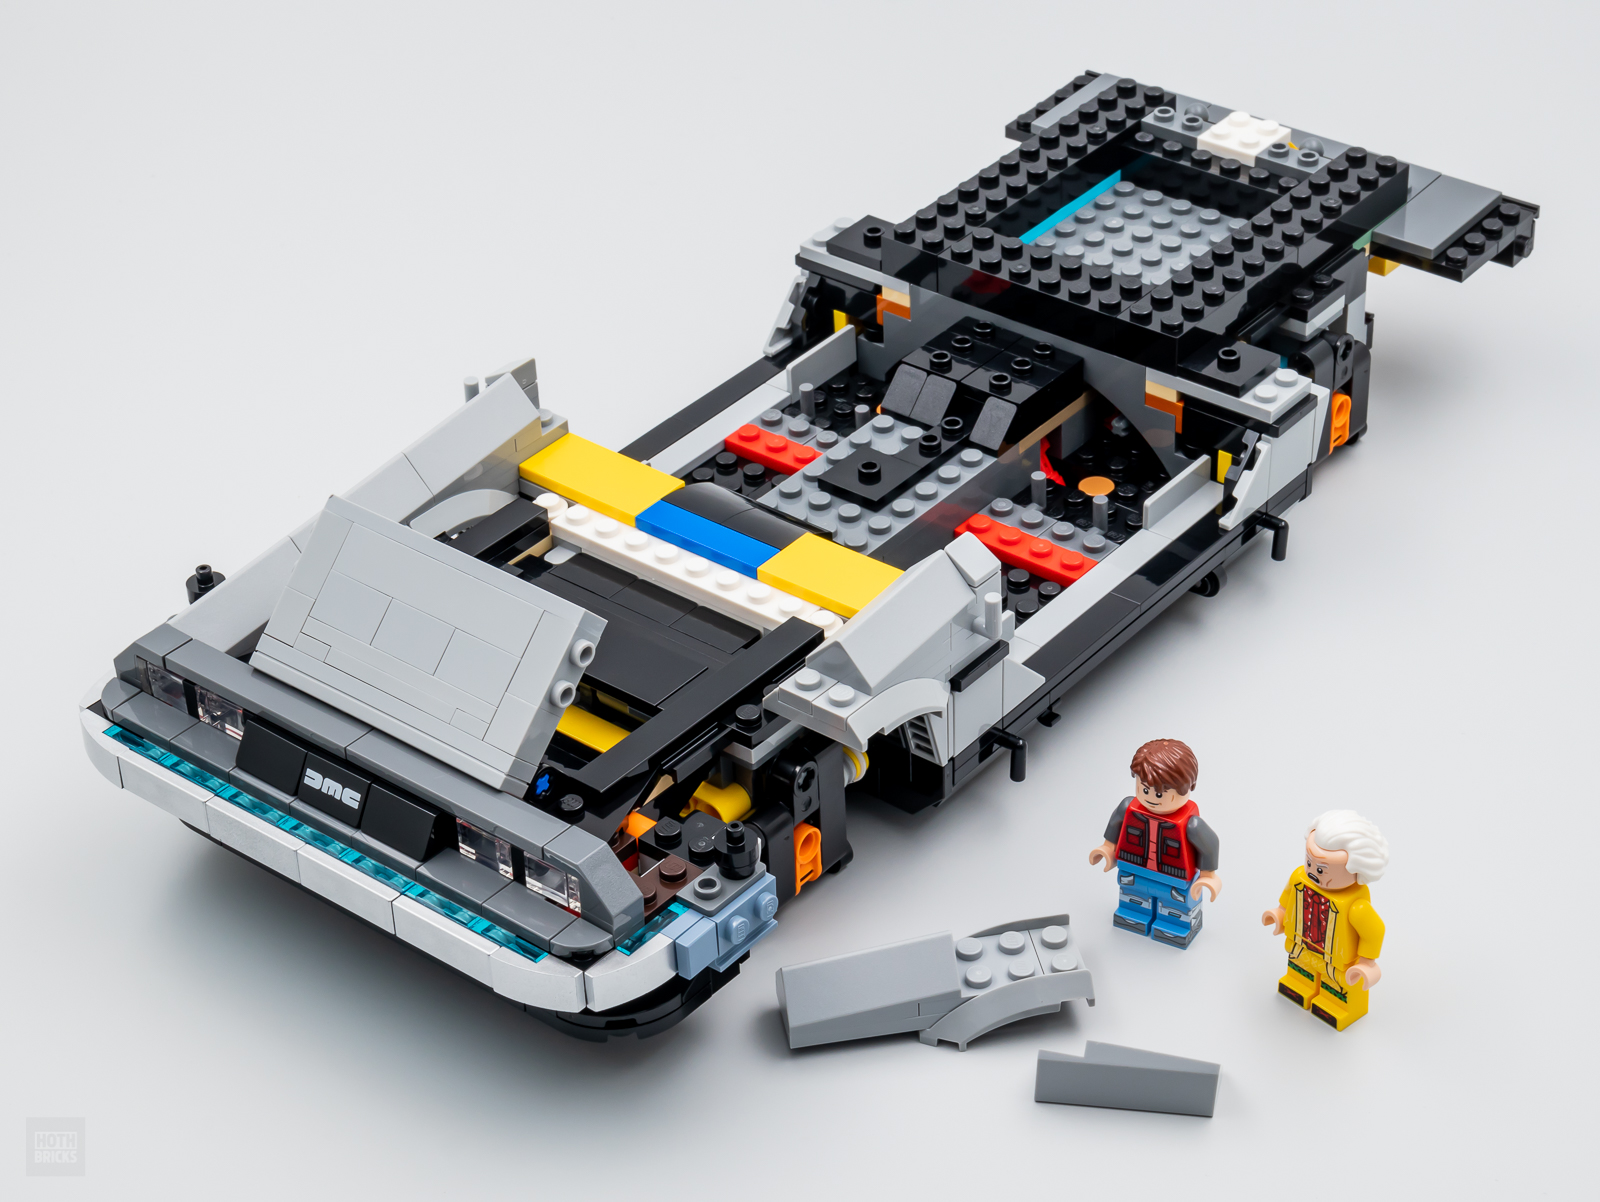 Lego BTTF 21103 (retour vers le futur) [partie 1] - Lego(R) by Alkinoos